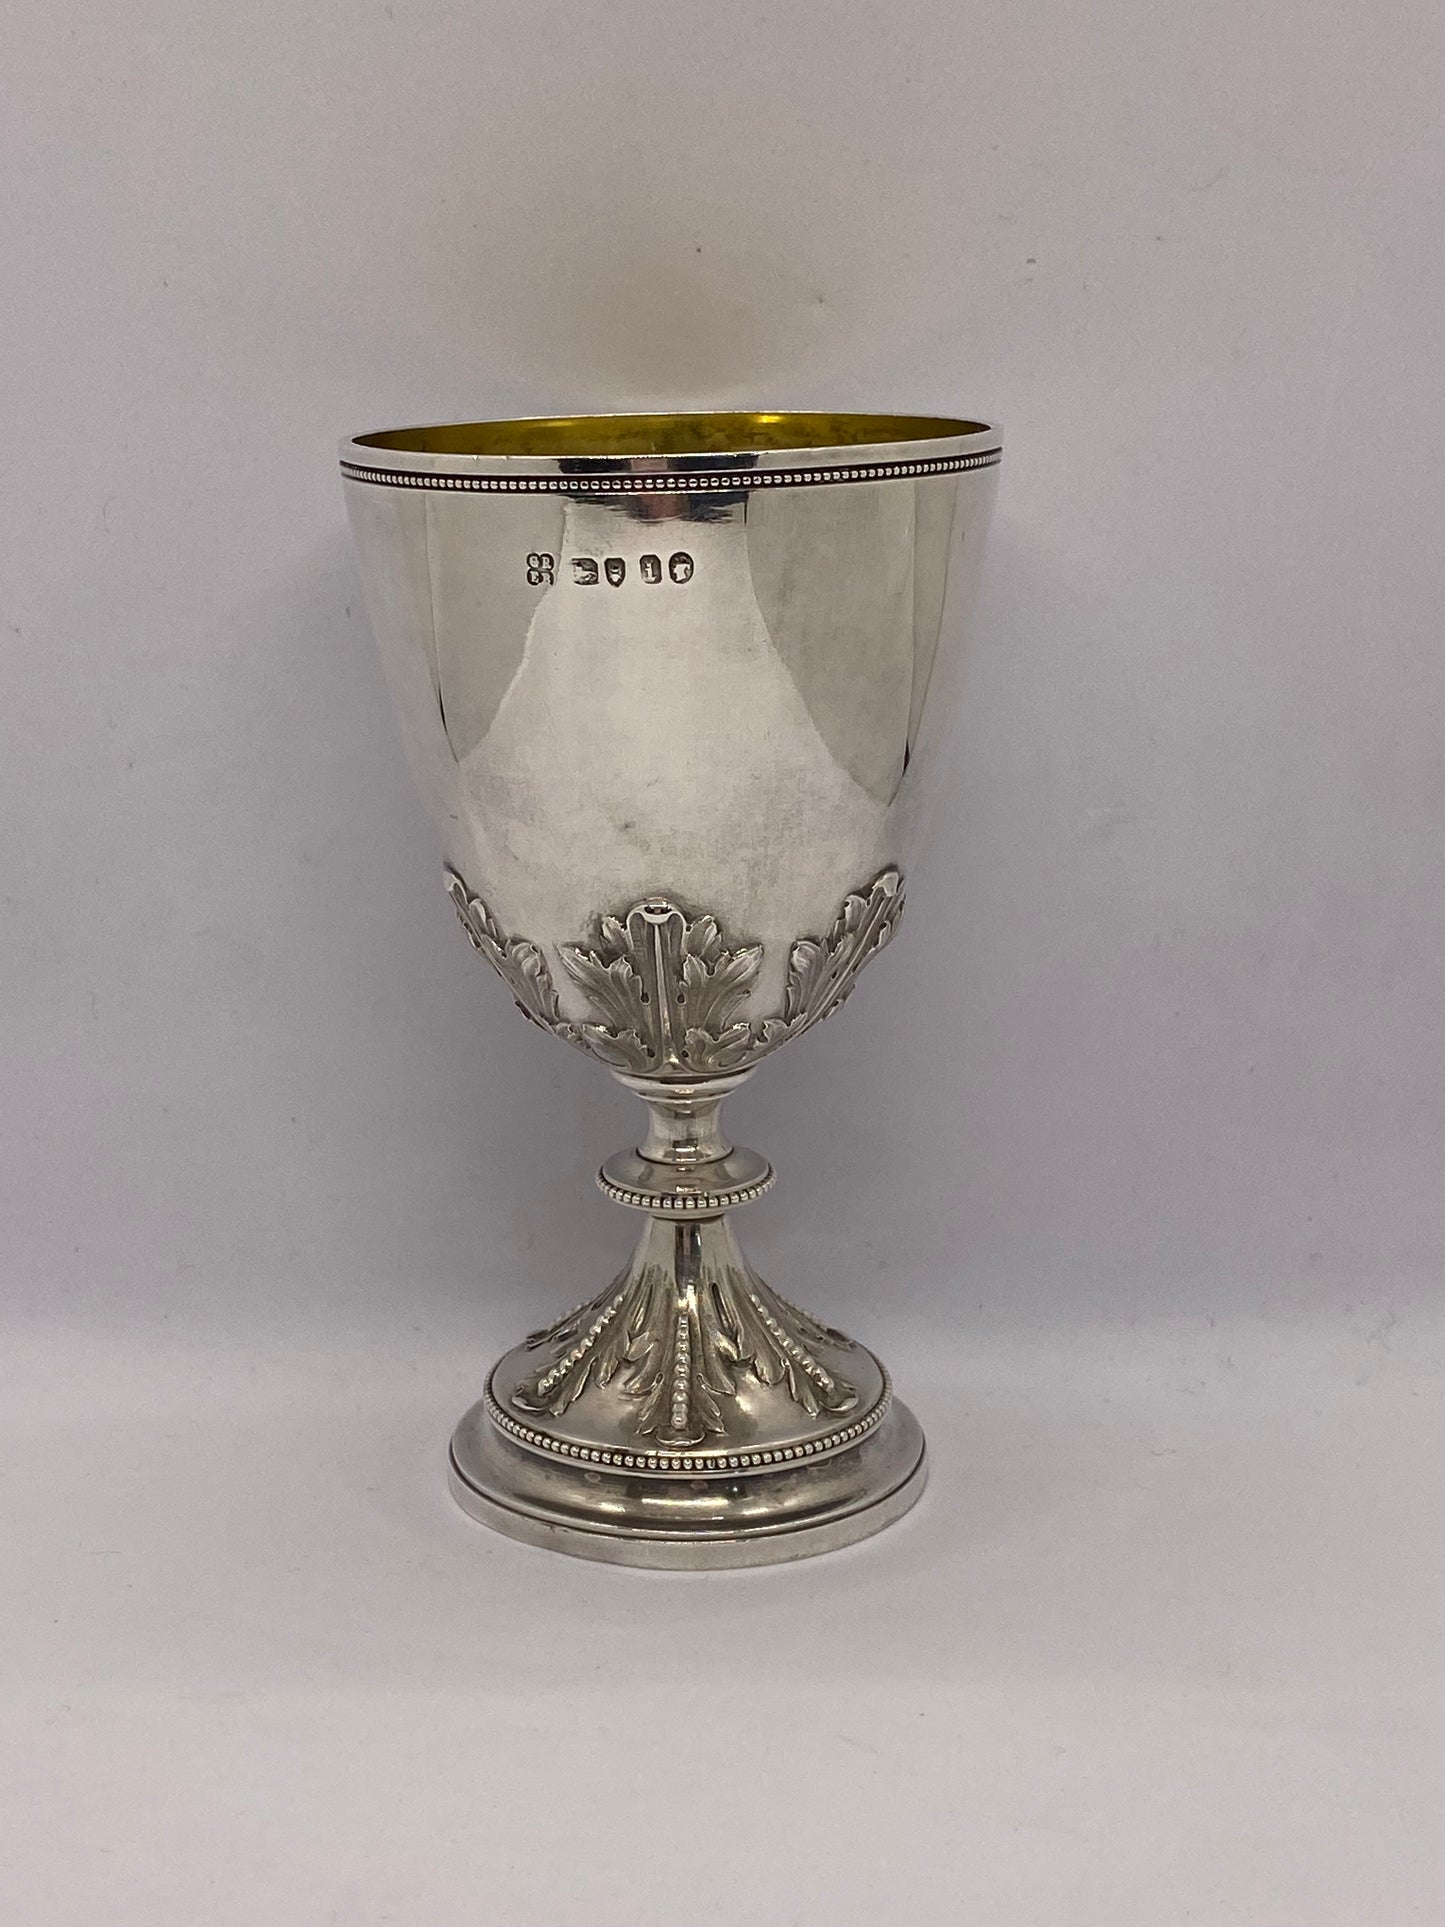 1869 年兰德威克秋季会议纯银科林斯杯